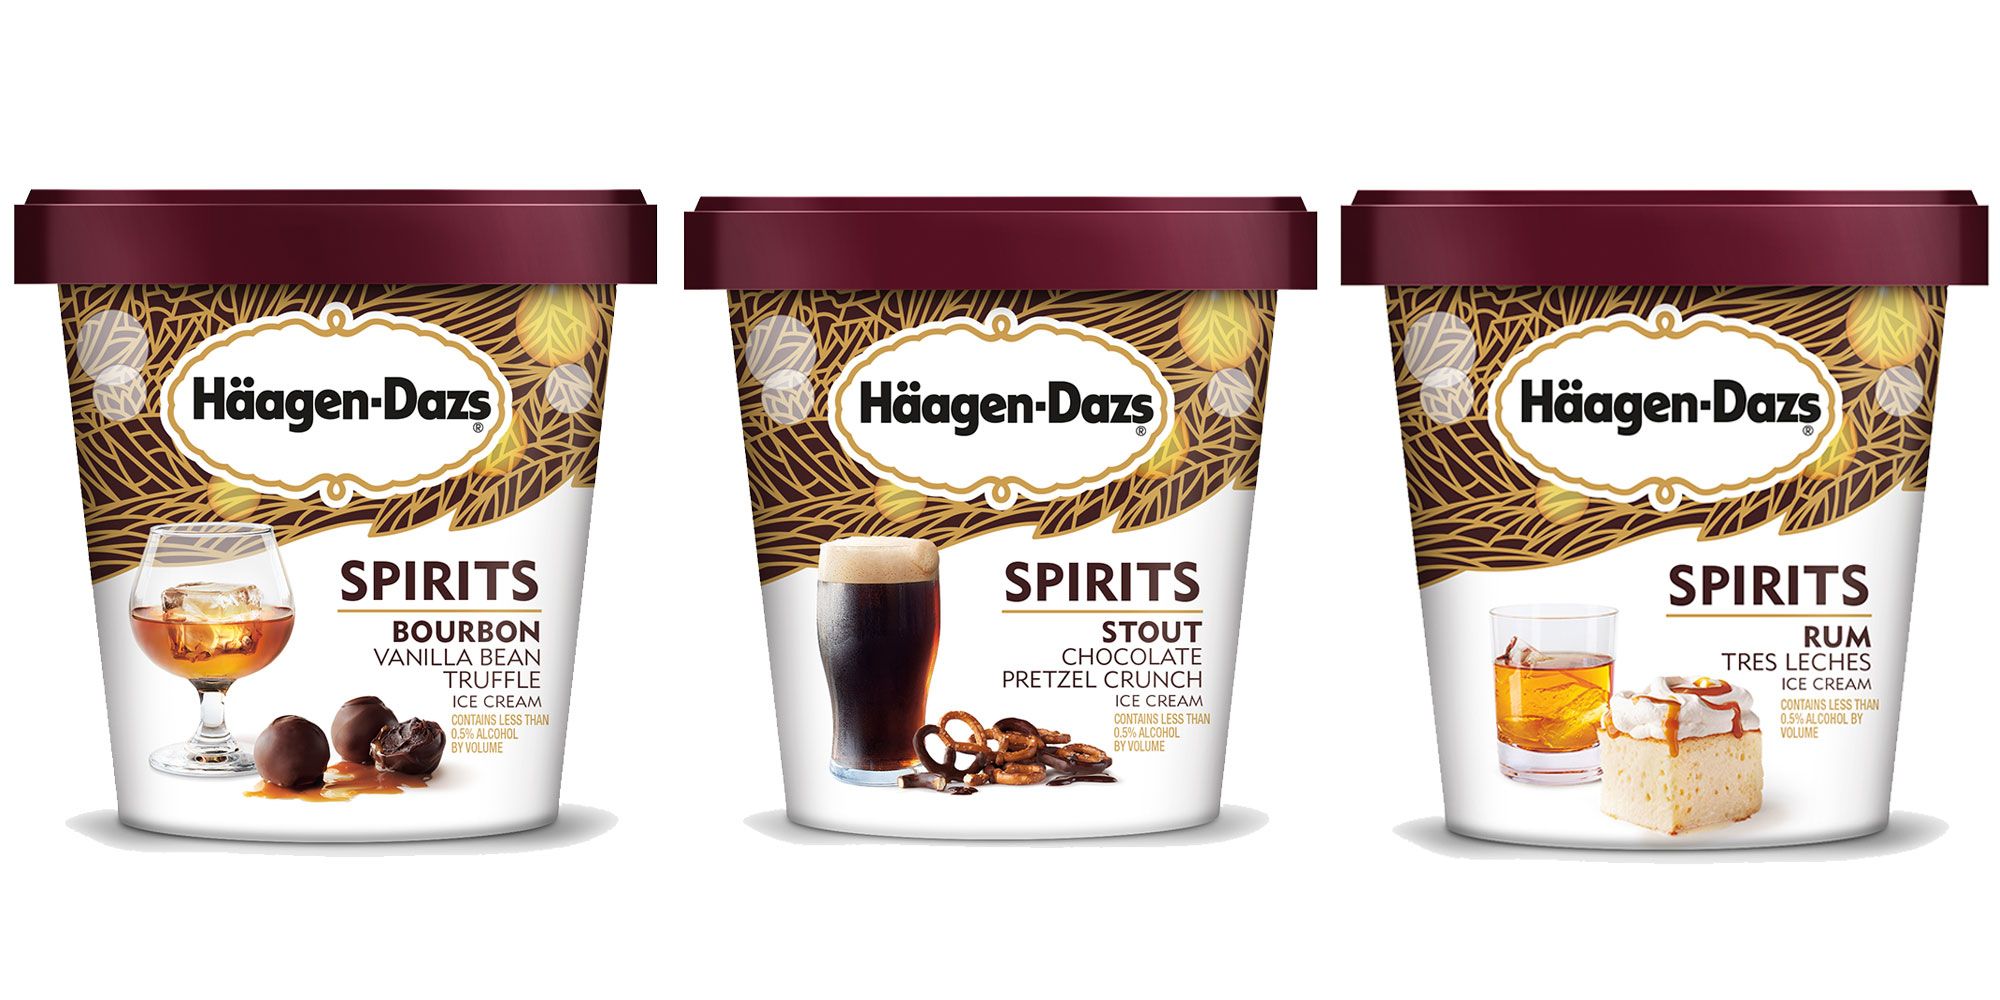 Haagen-Dazs Boozy Ice Cream Line - Haagen-Dazs Spirits Collection